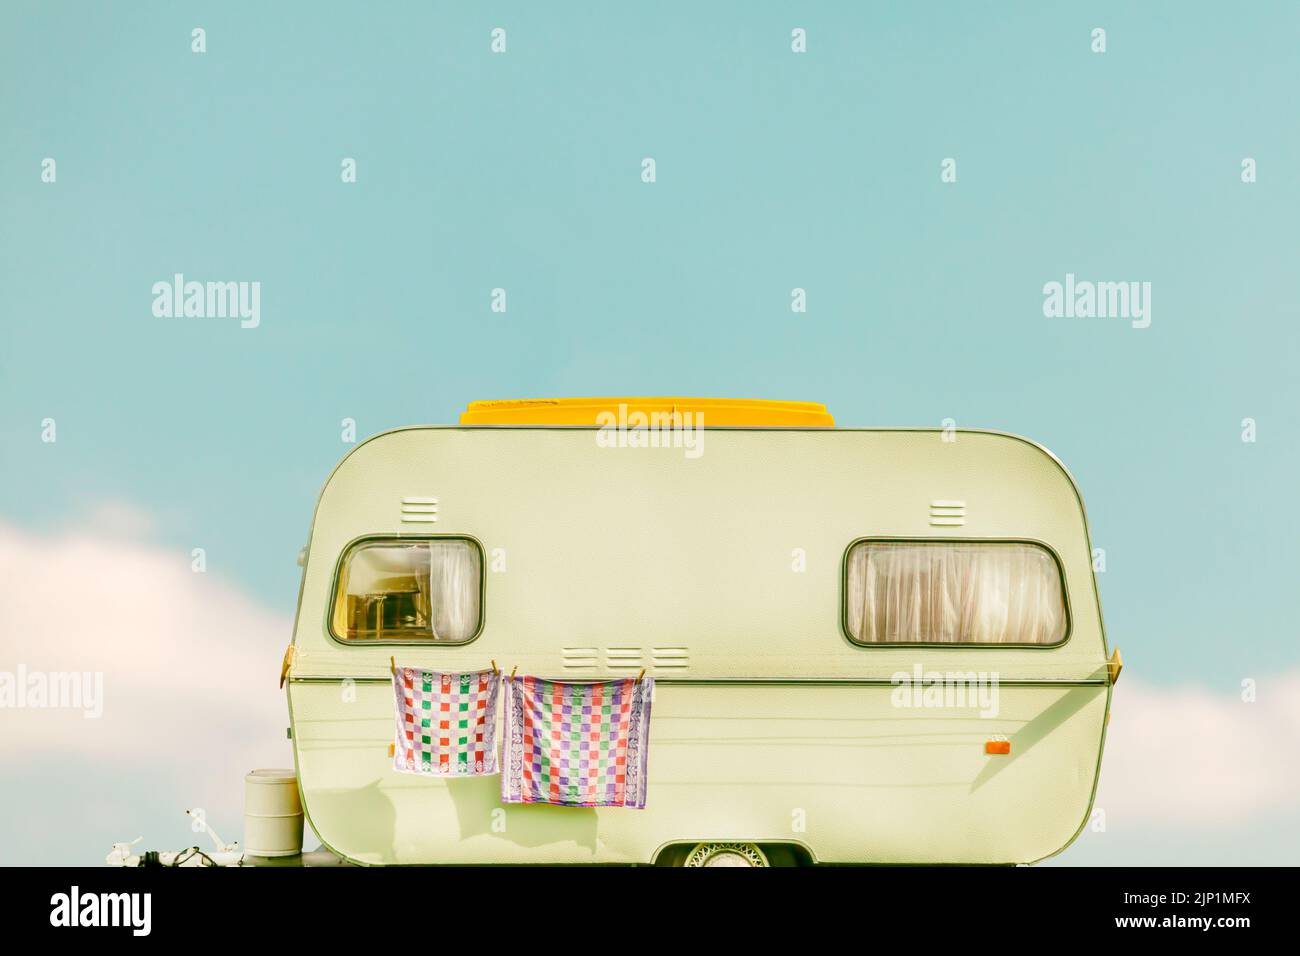 Image rétro d'une caravane vintage avec serviette et rideaux Banque D'Images